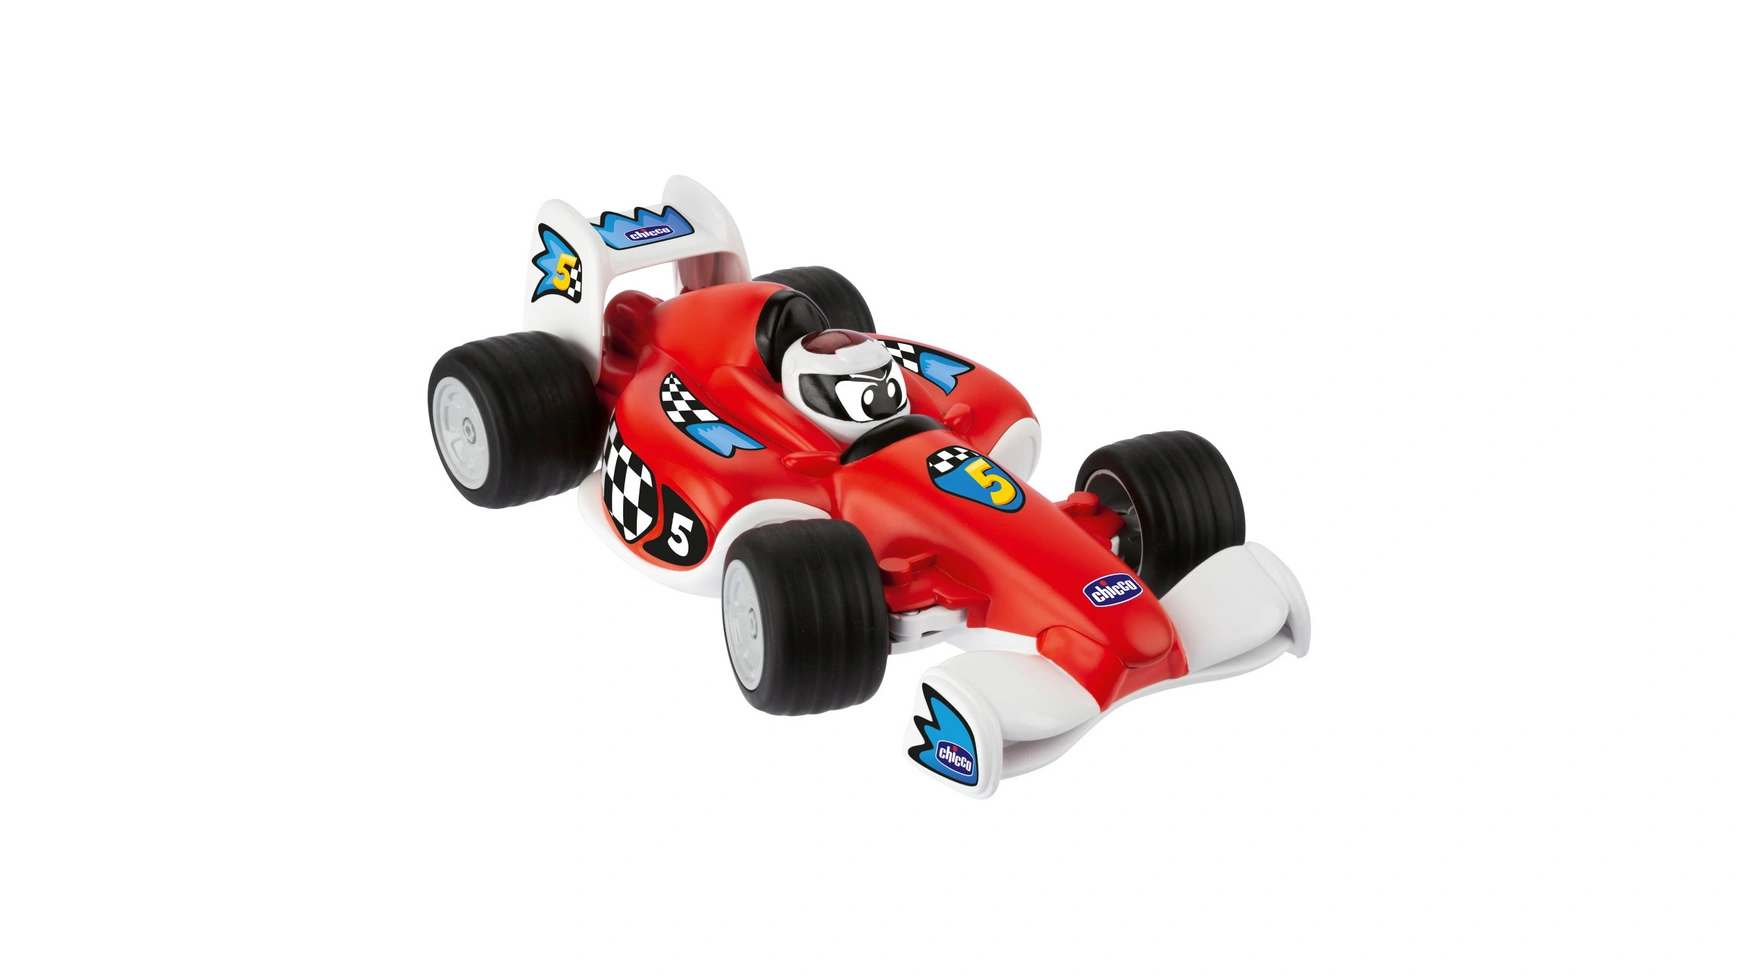 Chicco Tom race rc wpl e 1 rc tank toy 2 4g super rc tank 4wd crawler гусеничный автомобиль с дистанционным управлением и зарядным устройством игрушки для мальчиков для детей